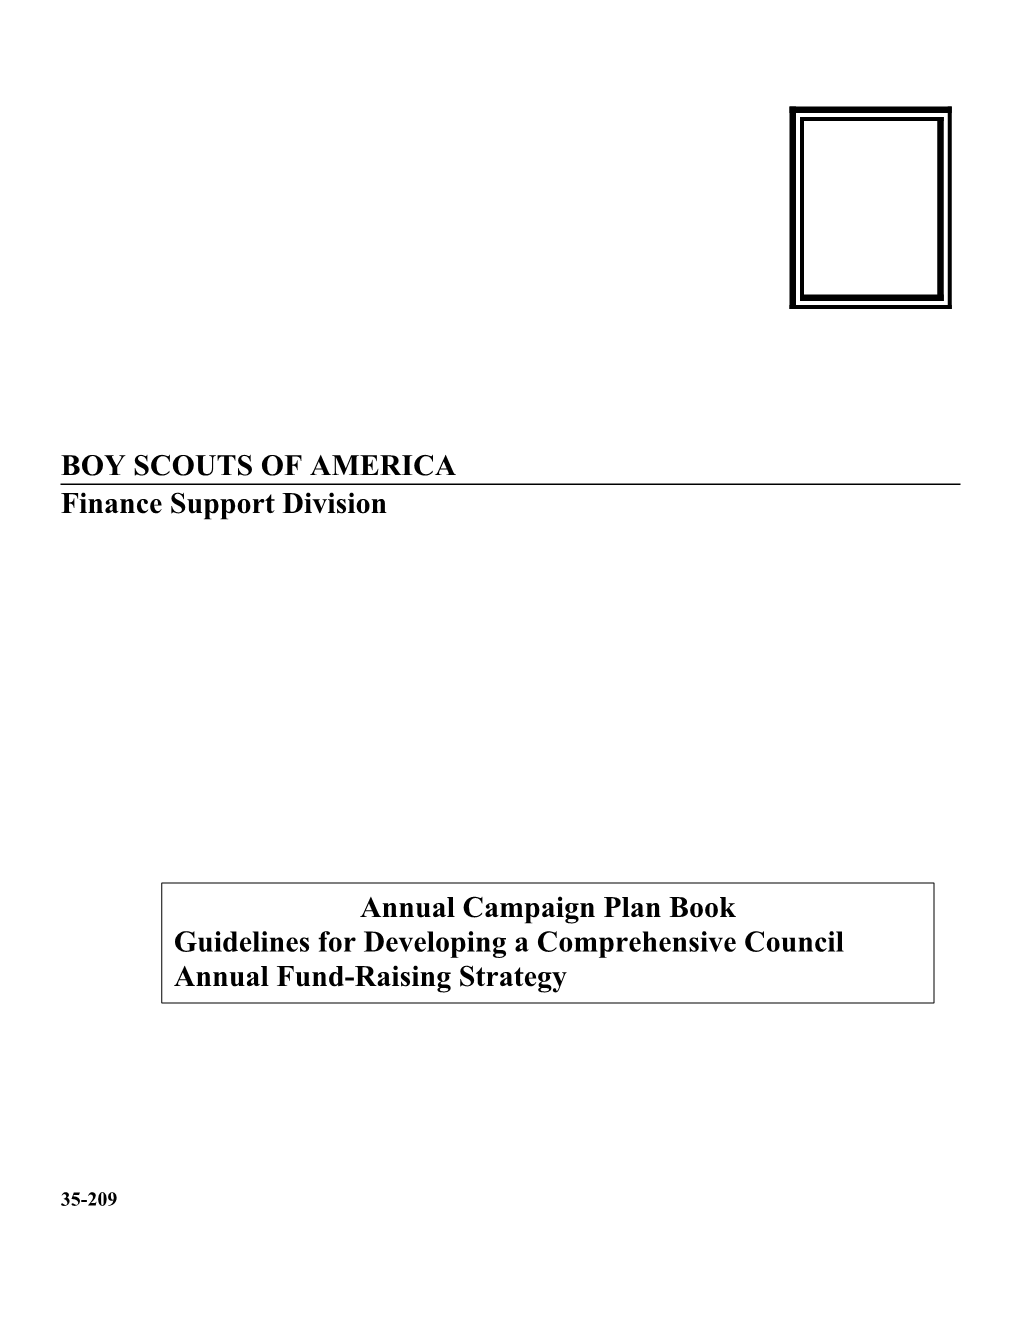 Annual Campaign Plan Book